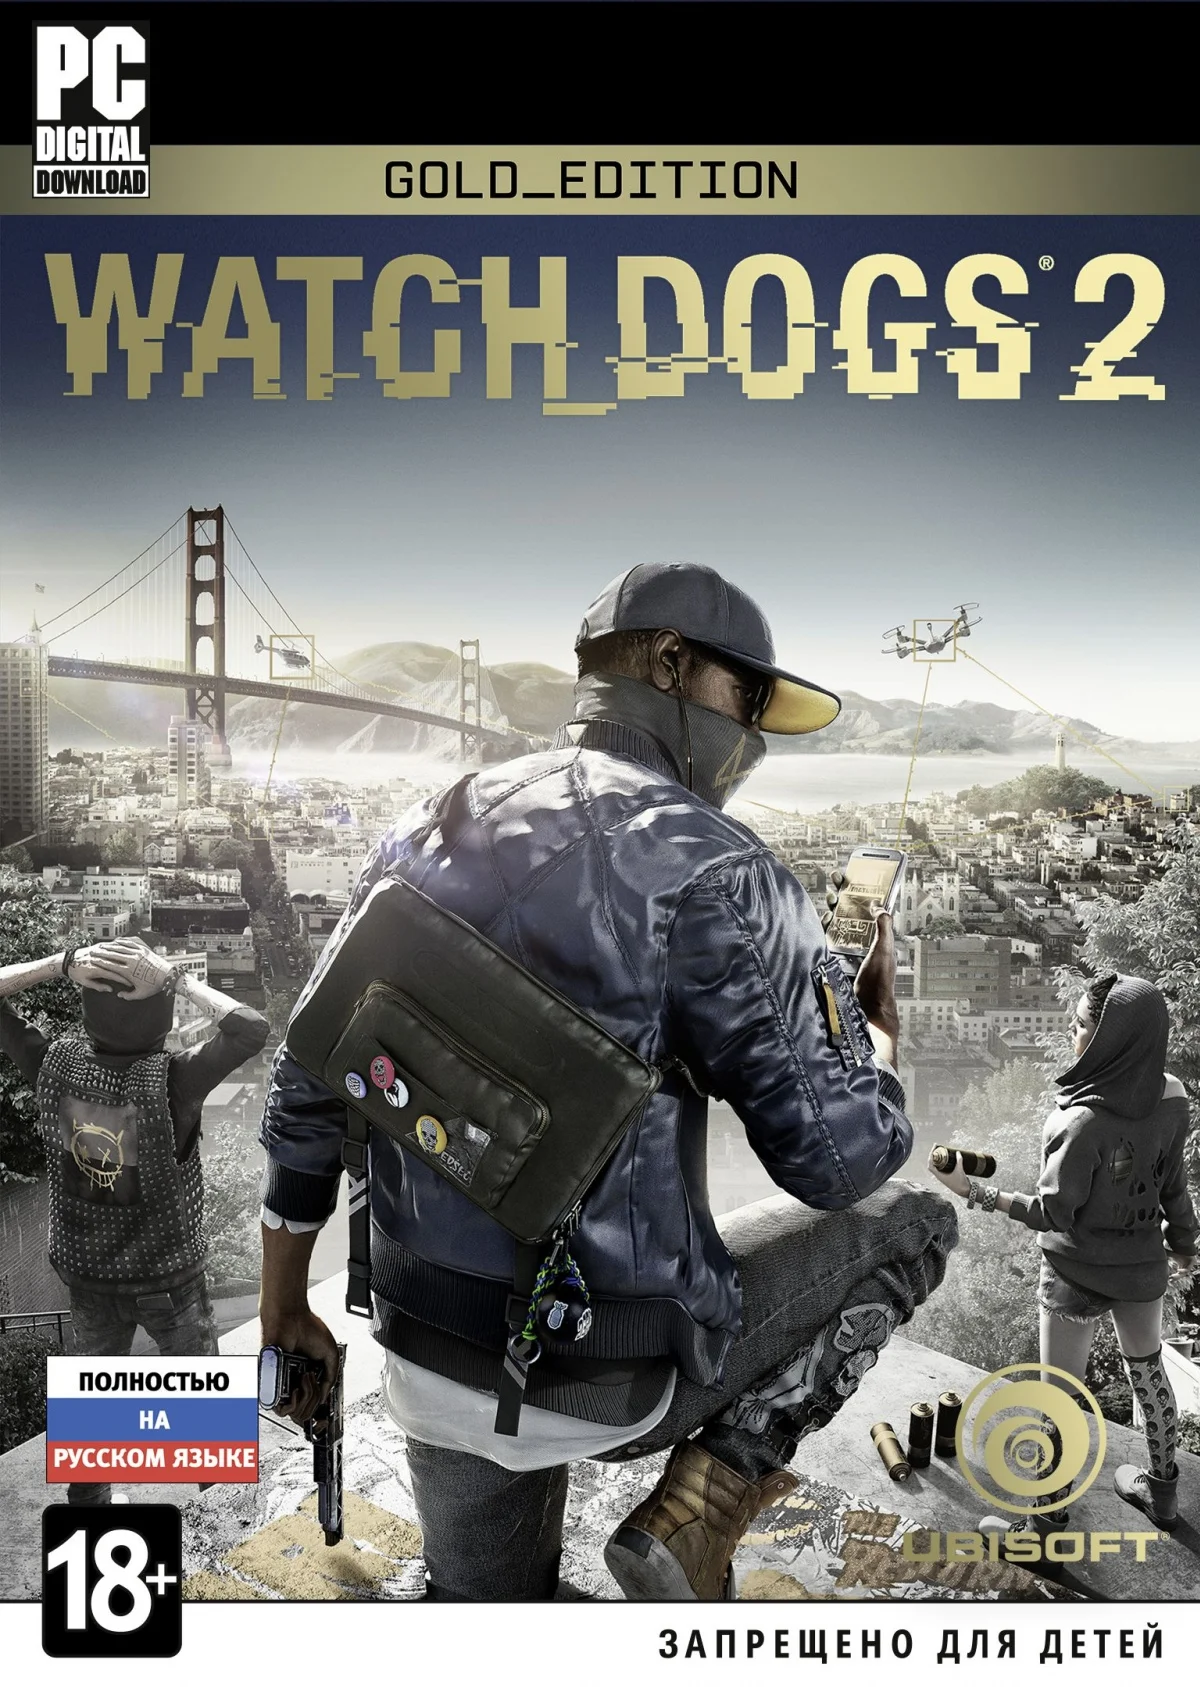 Watch Dogs 2 вышла на РС - фото 5